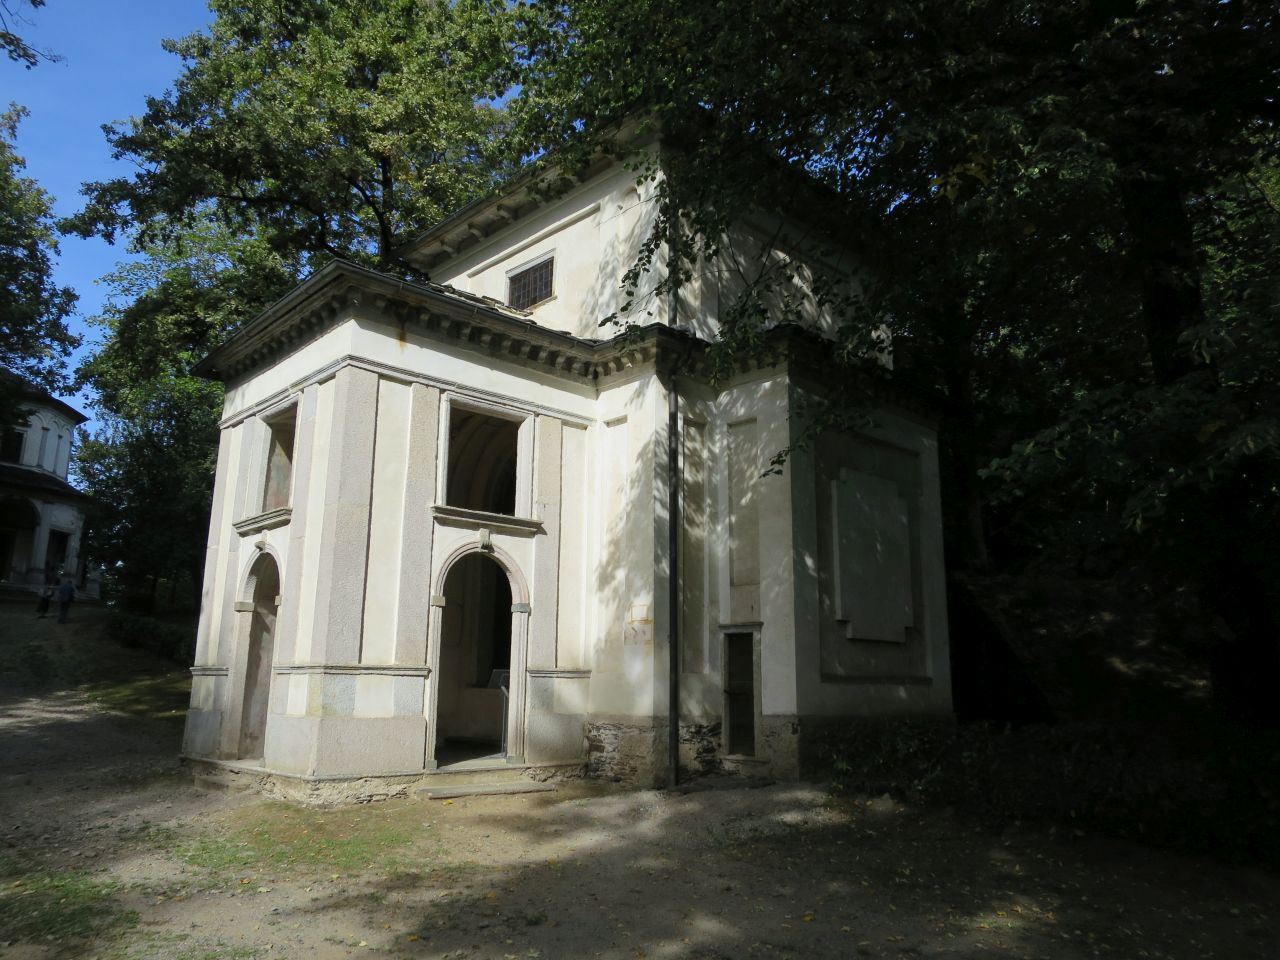 Cappella IX detta "della vestizione di S. Chiara" (cappella, devozionale) - Orta San Giulio (NO)  (XVII; XVII; XVII; XVII)